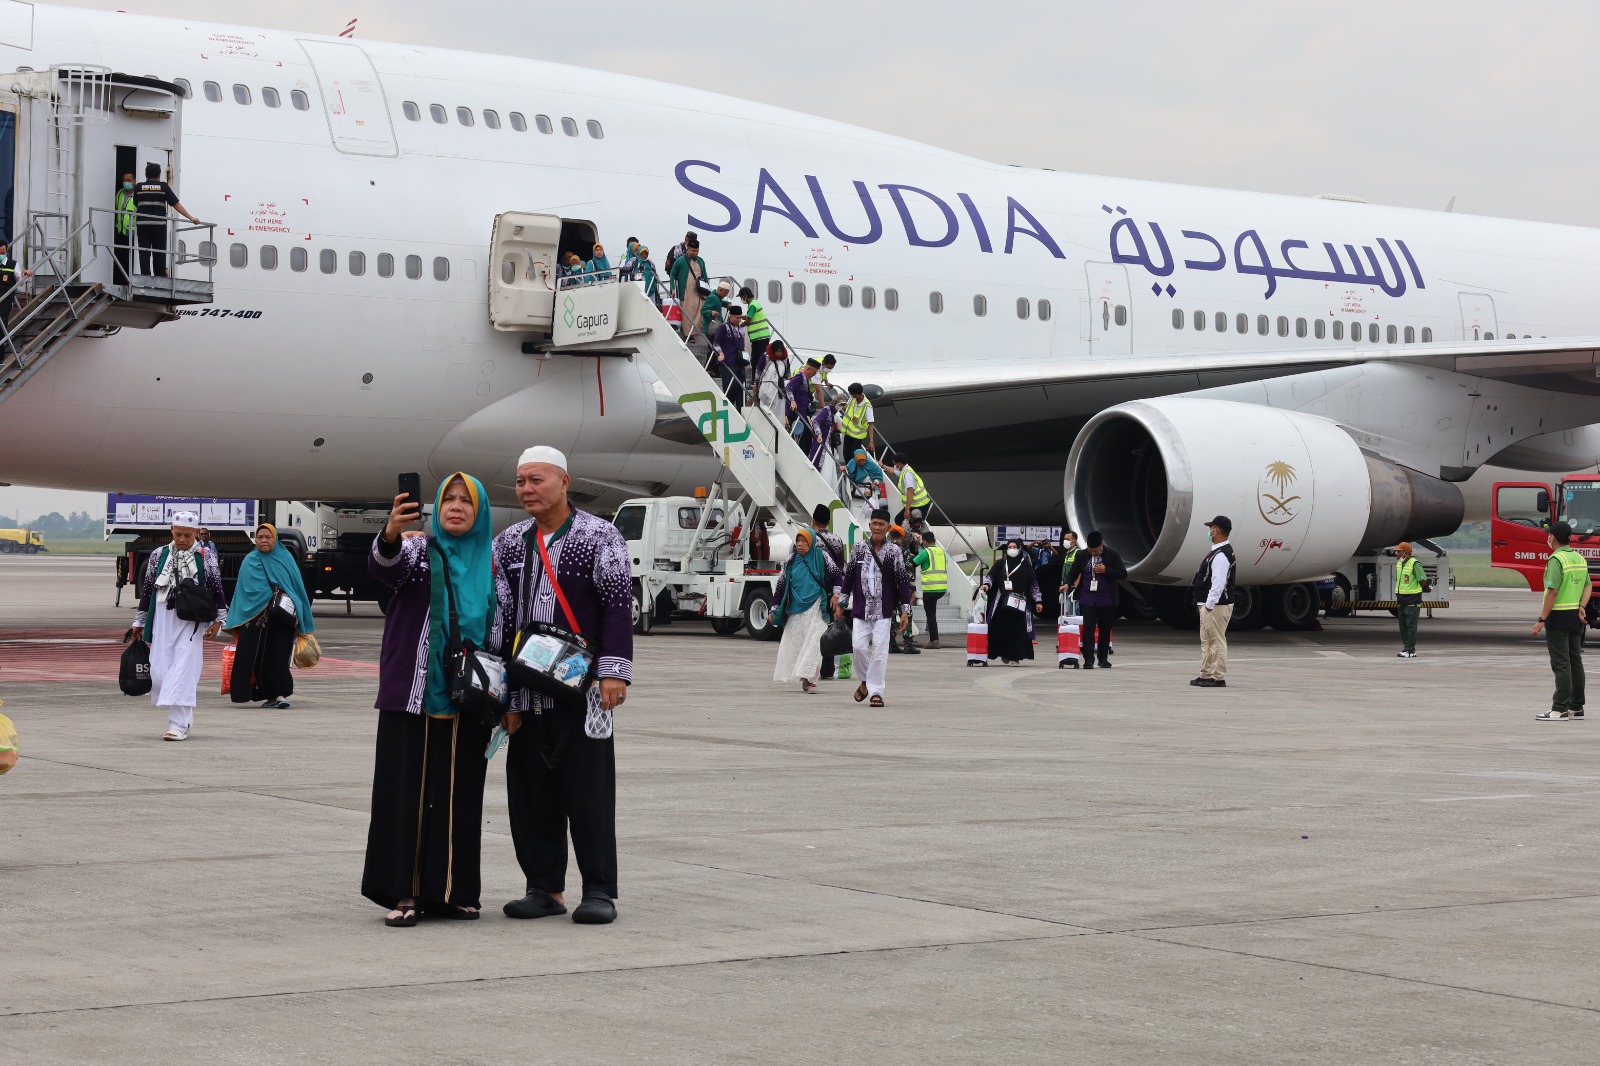 2 Jemaah Haji Kloter 2 Embarkasi Palembang Tak Ikut Pulang ke Tanah Air, Masih Dirawat di Arab Saudi